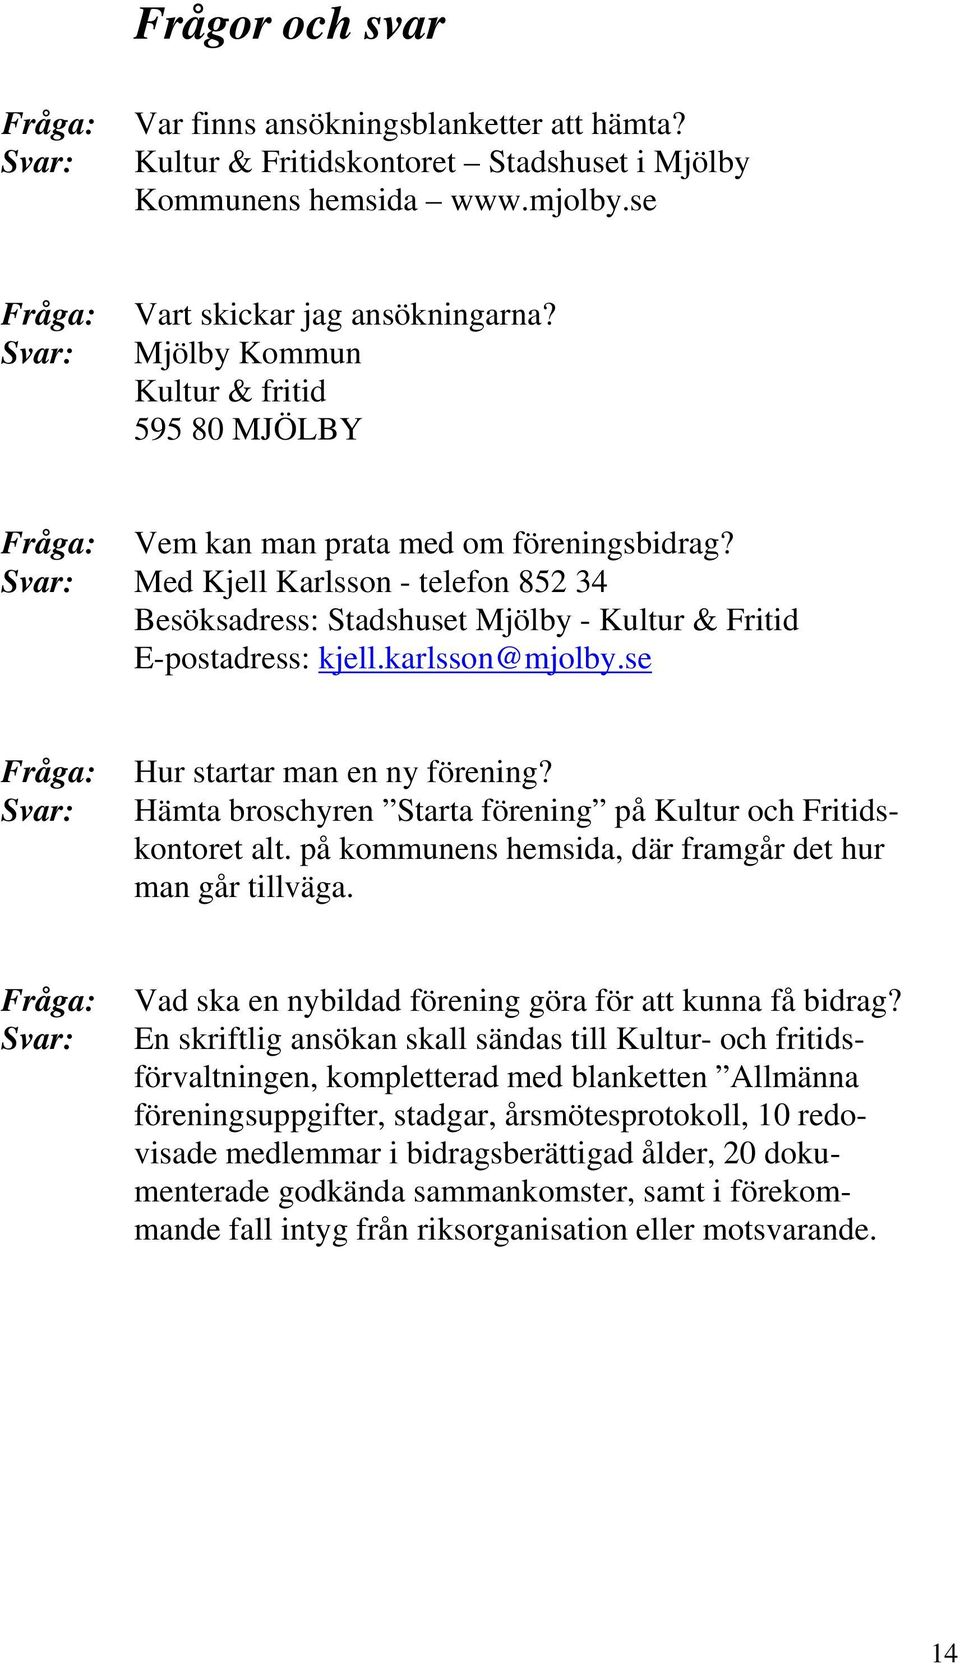 Svar: Med Kjell Karlsson - telefon 852 34 Besöksadress: Stadshuset Mjölby - Kultur & Fritid E-postadress: kjell.karlsson@mjolby.se Fråga: Svar: Hur startar man en ny förening?